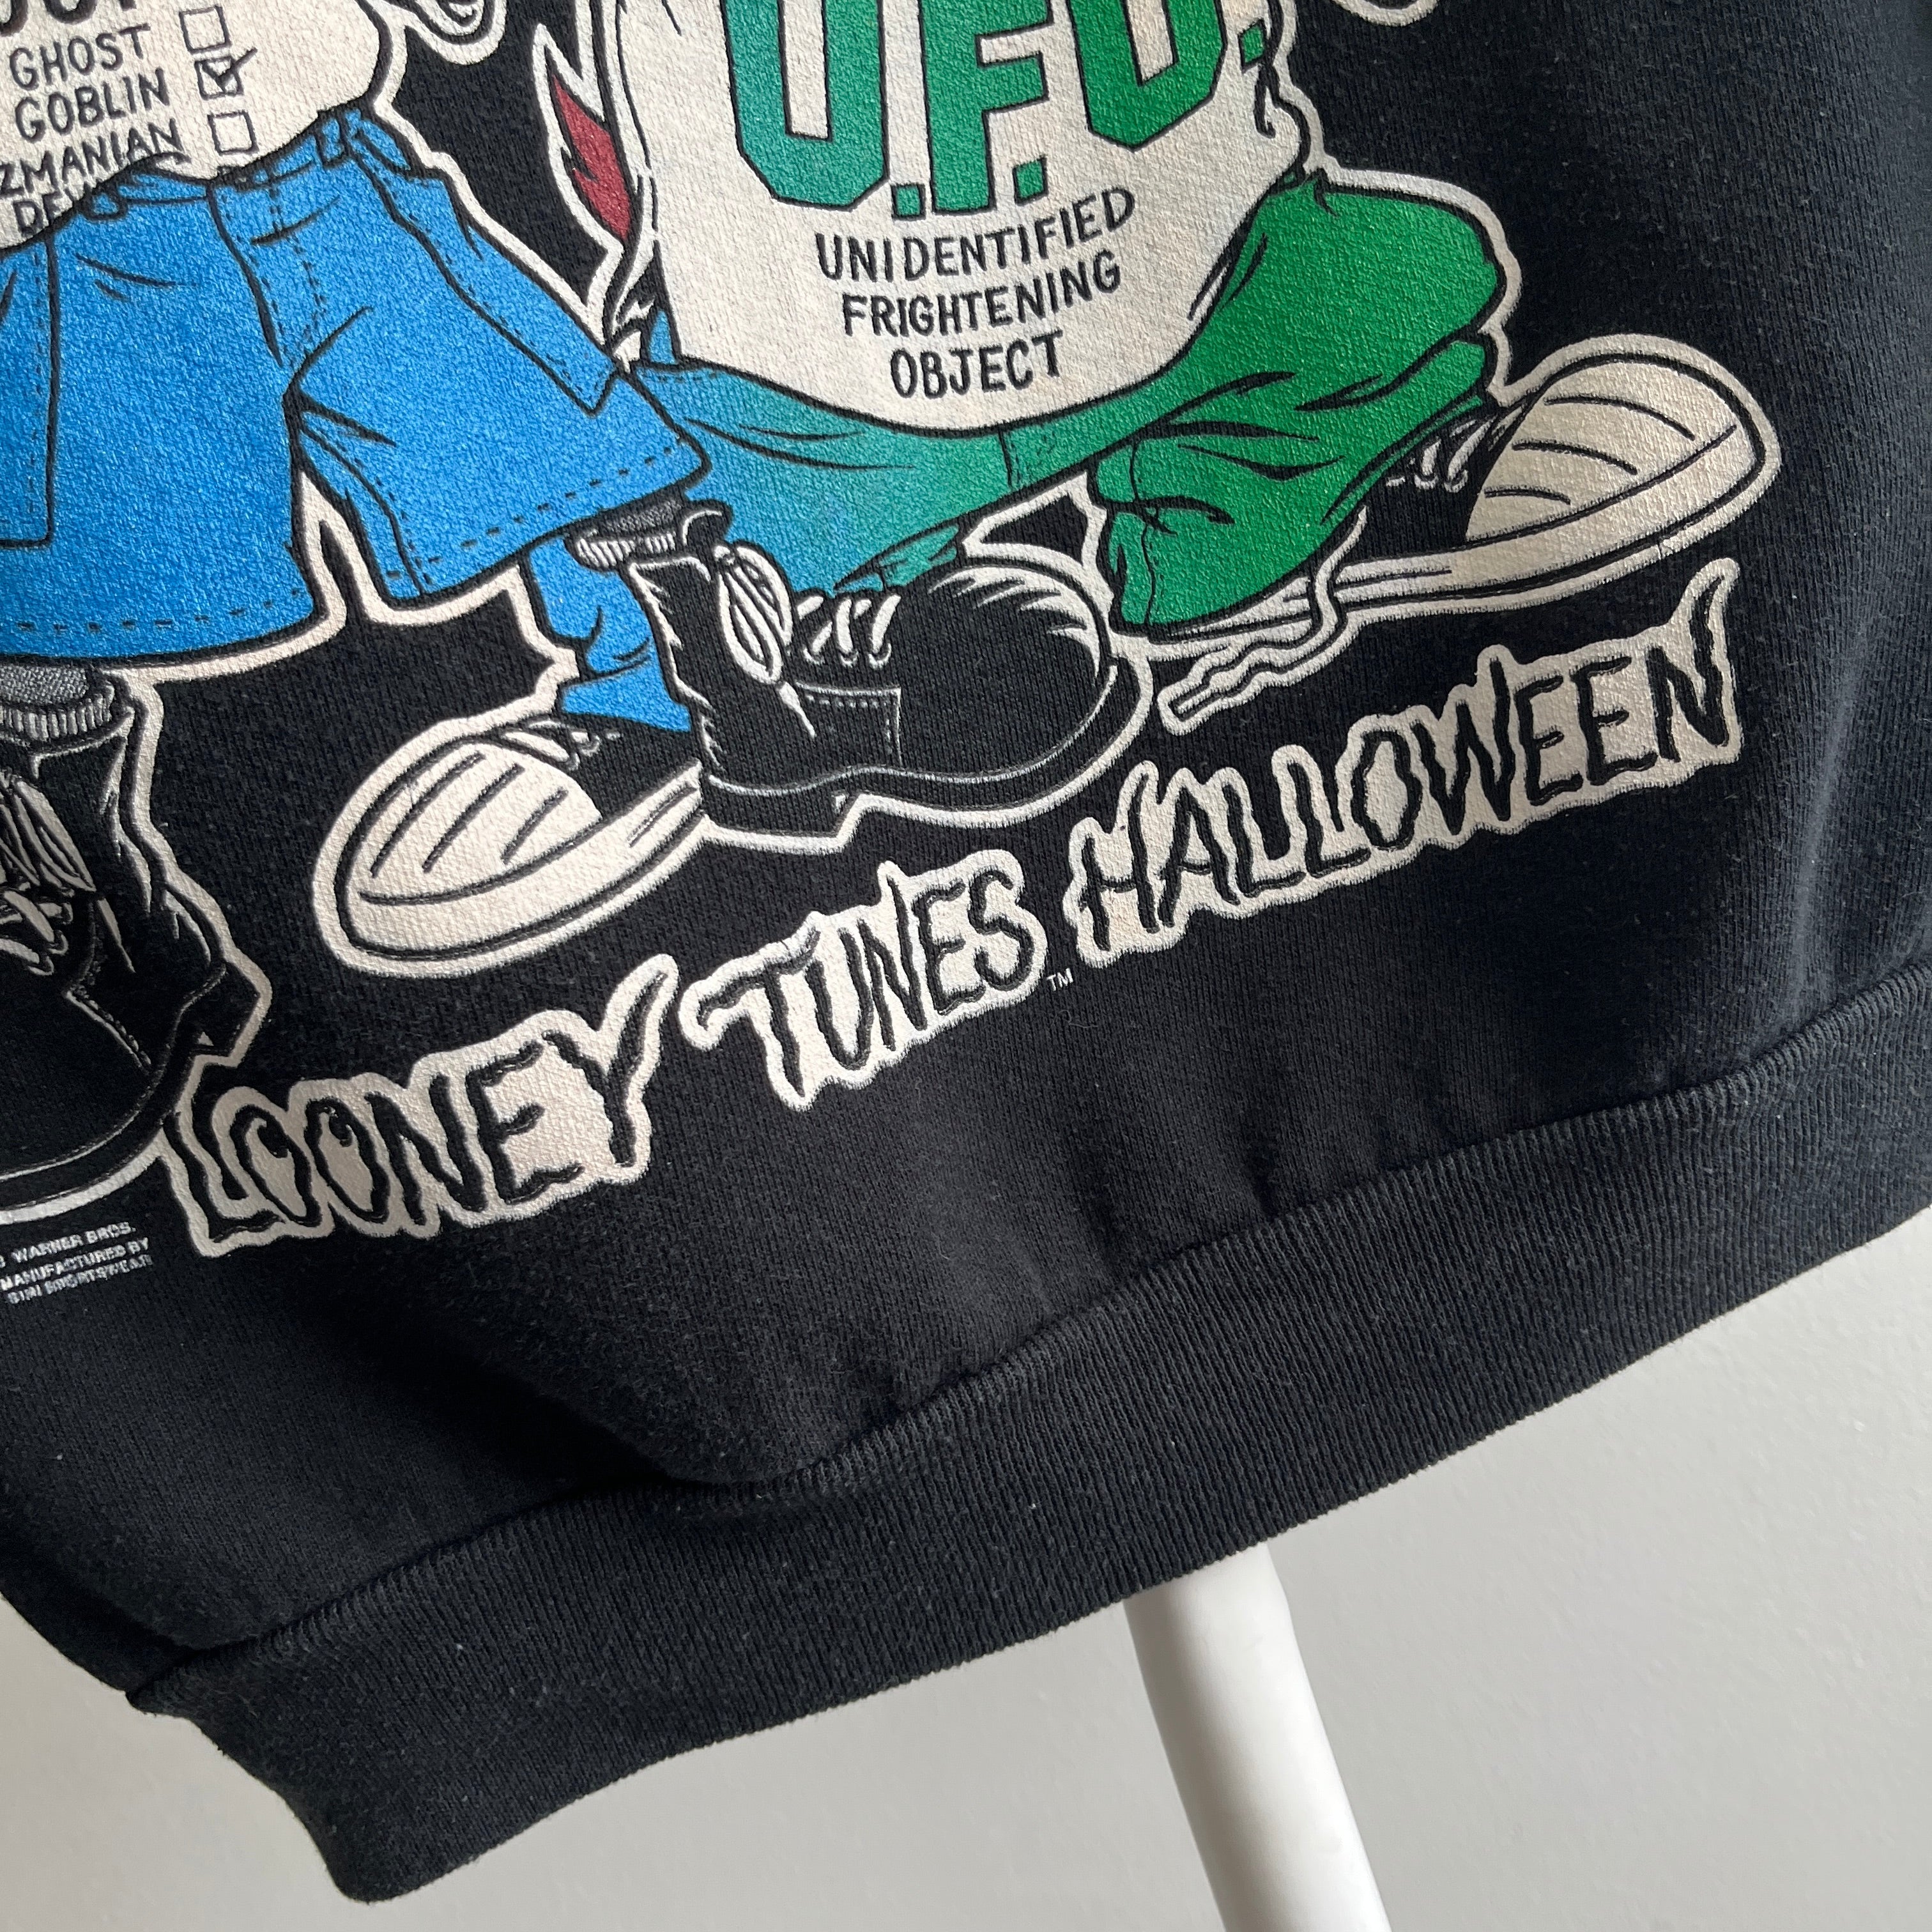 1993 Epic Warner Bros Halloween Sweatshirt with Bugs and Taz